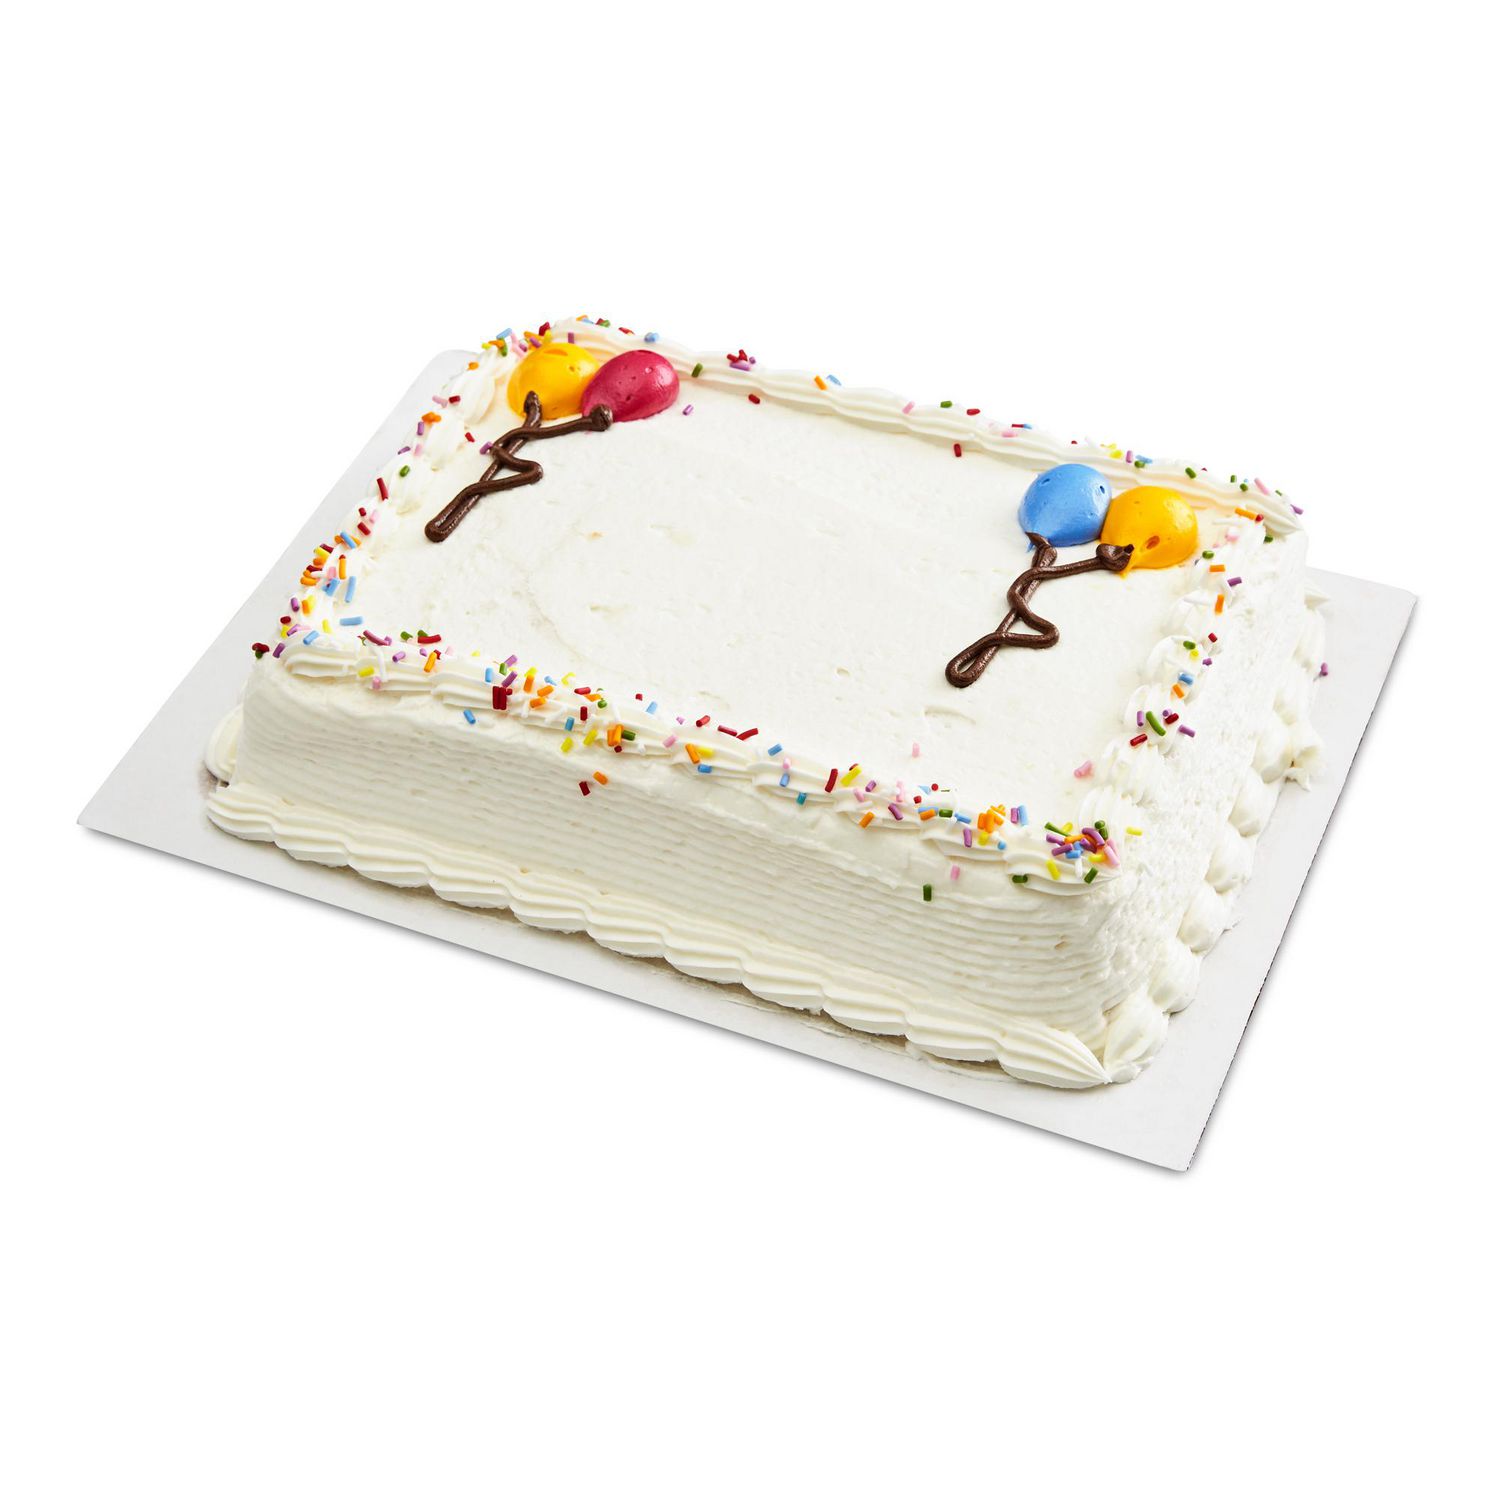 Your Fresh Market Celebration Cake